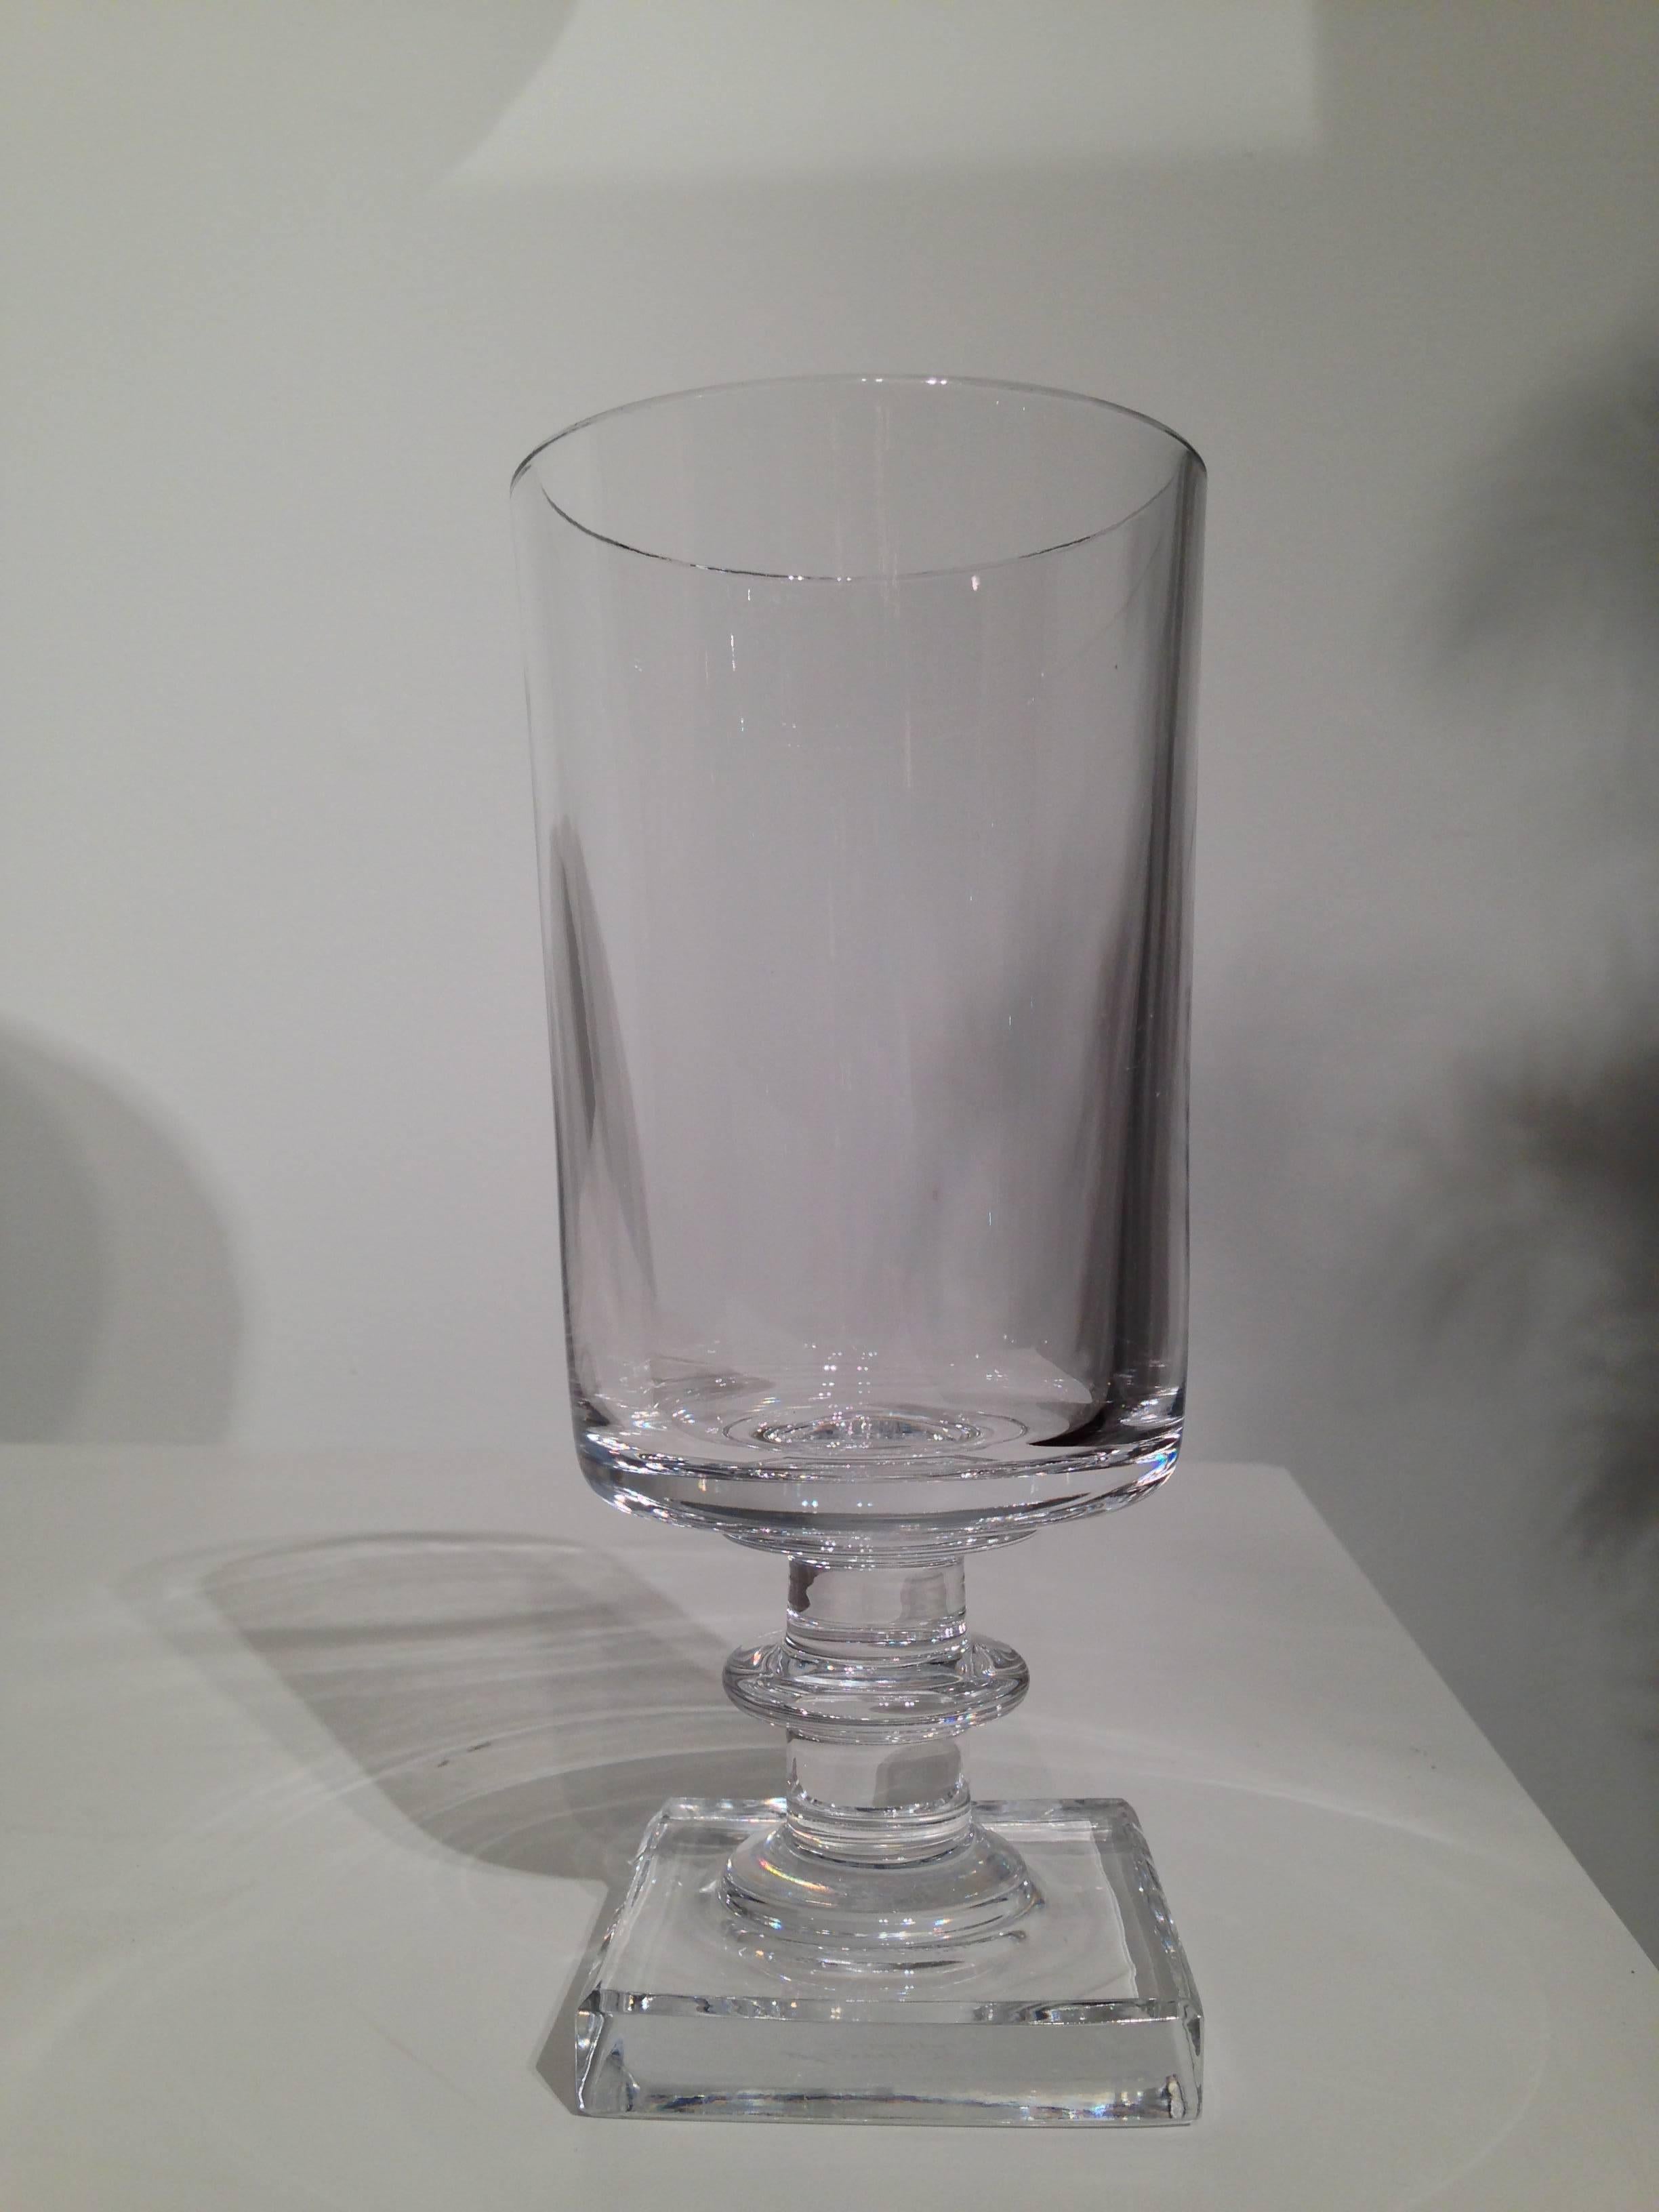 A modernist form lead crystal vase designed by Gerald Gulotta for Atlantis crystal signed 